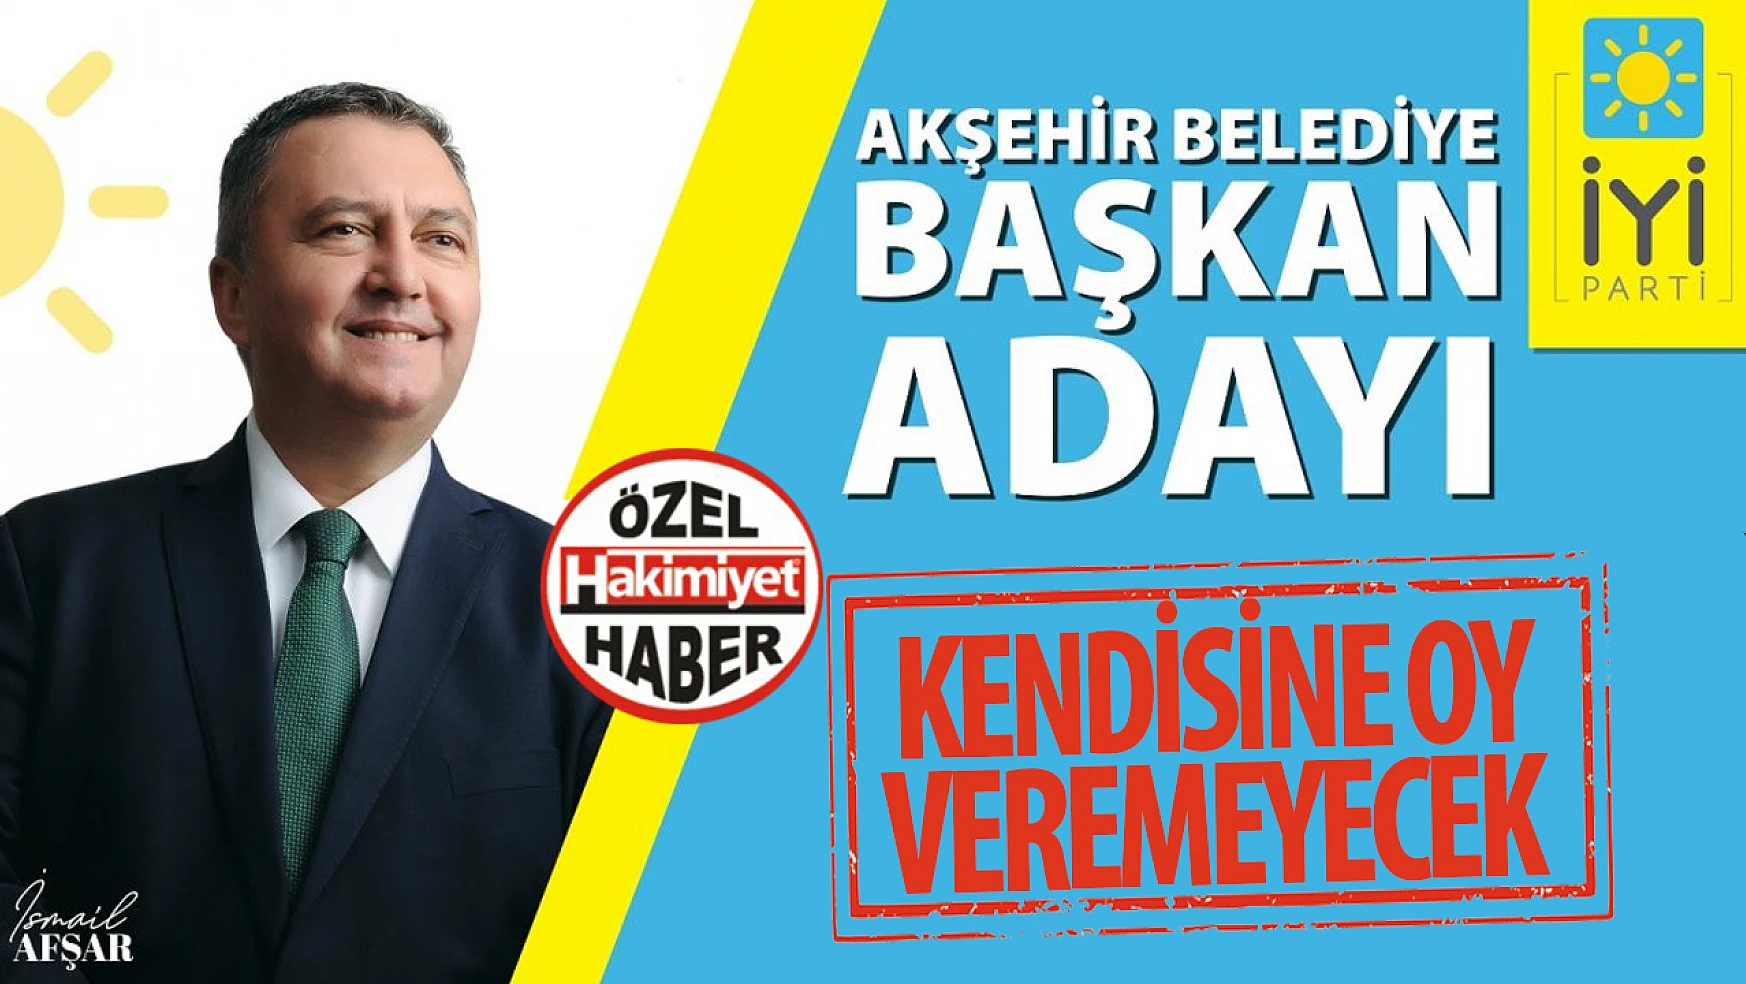 İYİ Parti Akşehir Belediye Başkan Adayı Kendisine Oy Veremeyecek